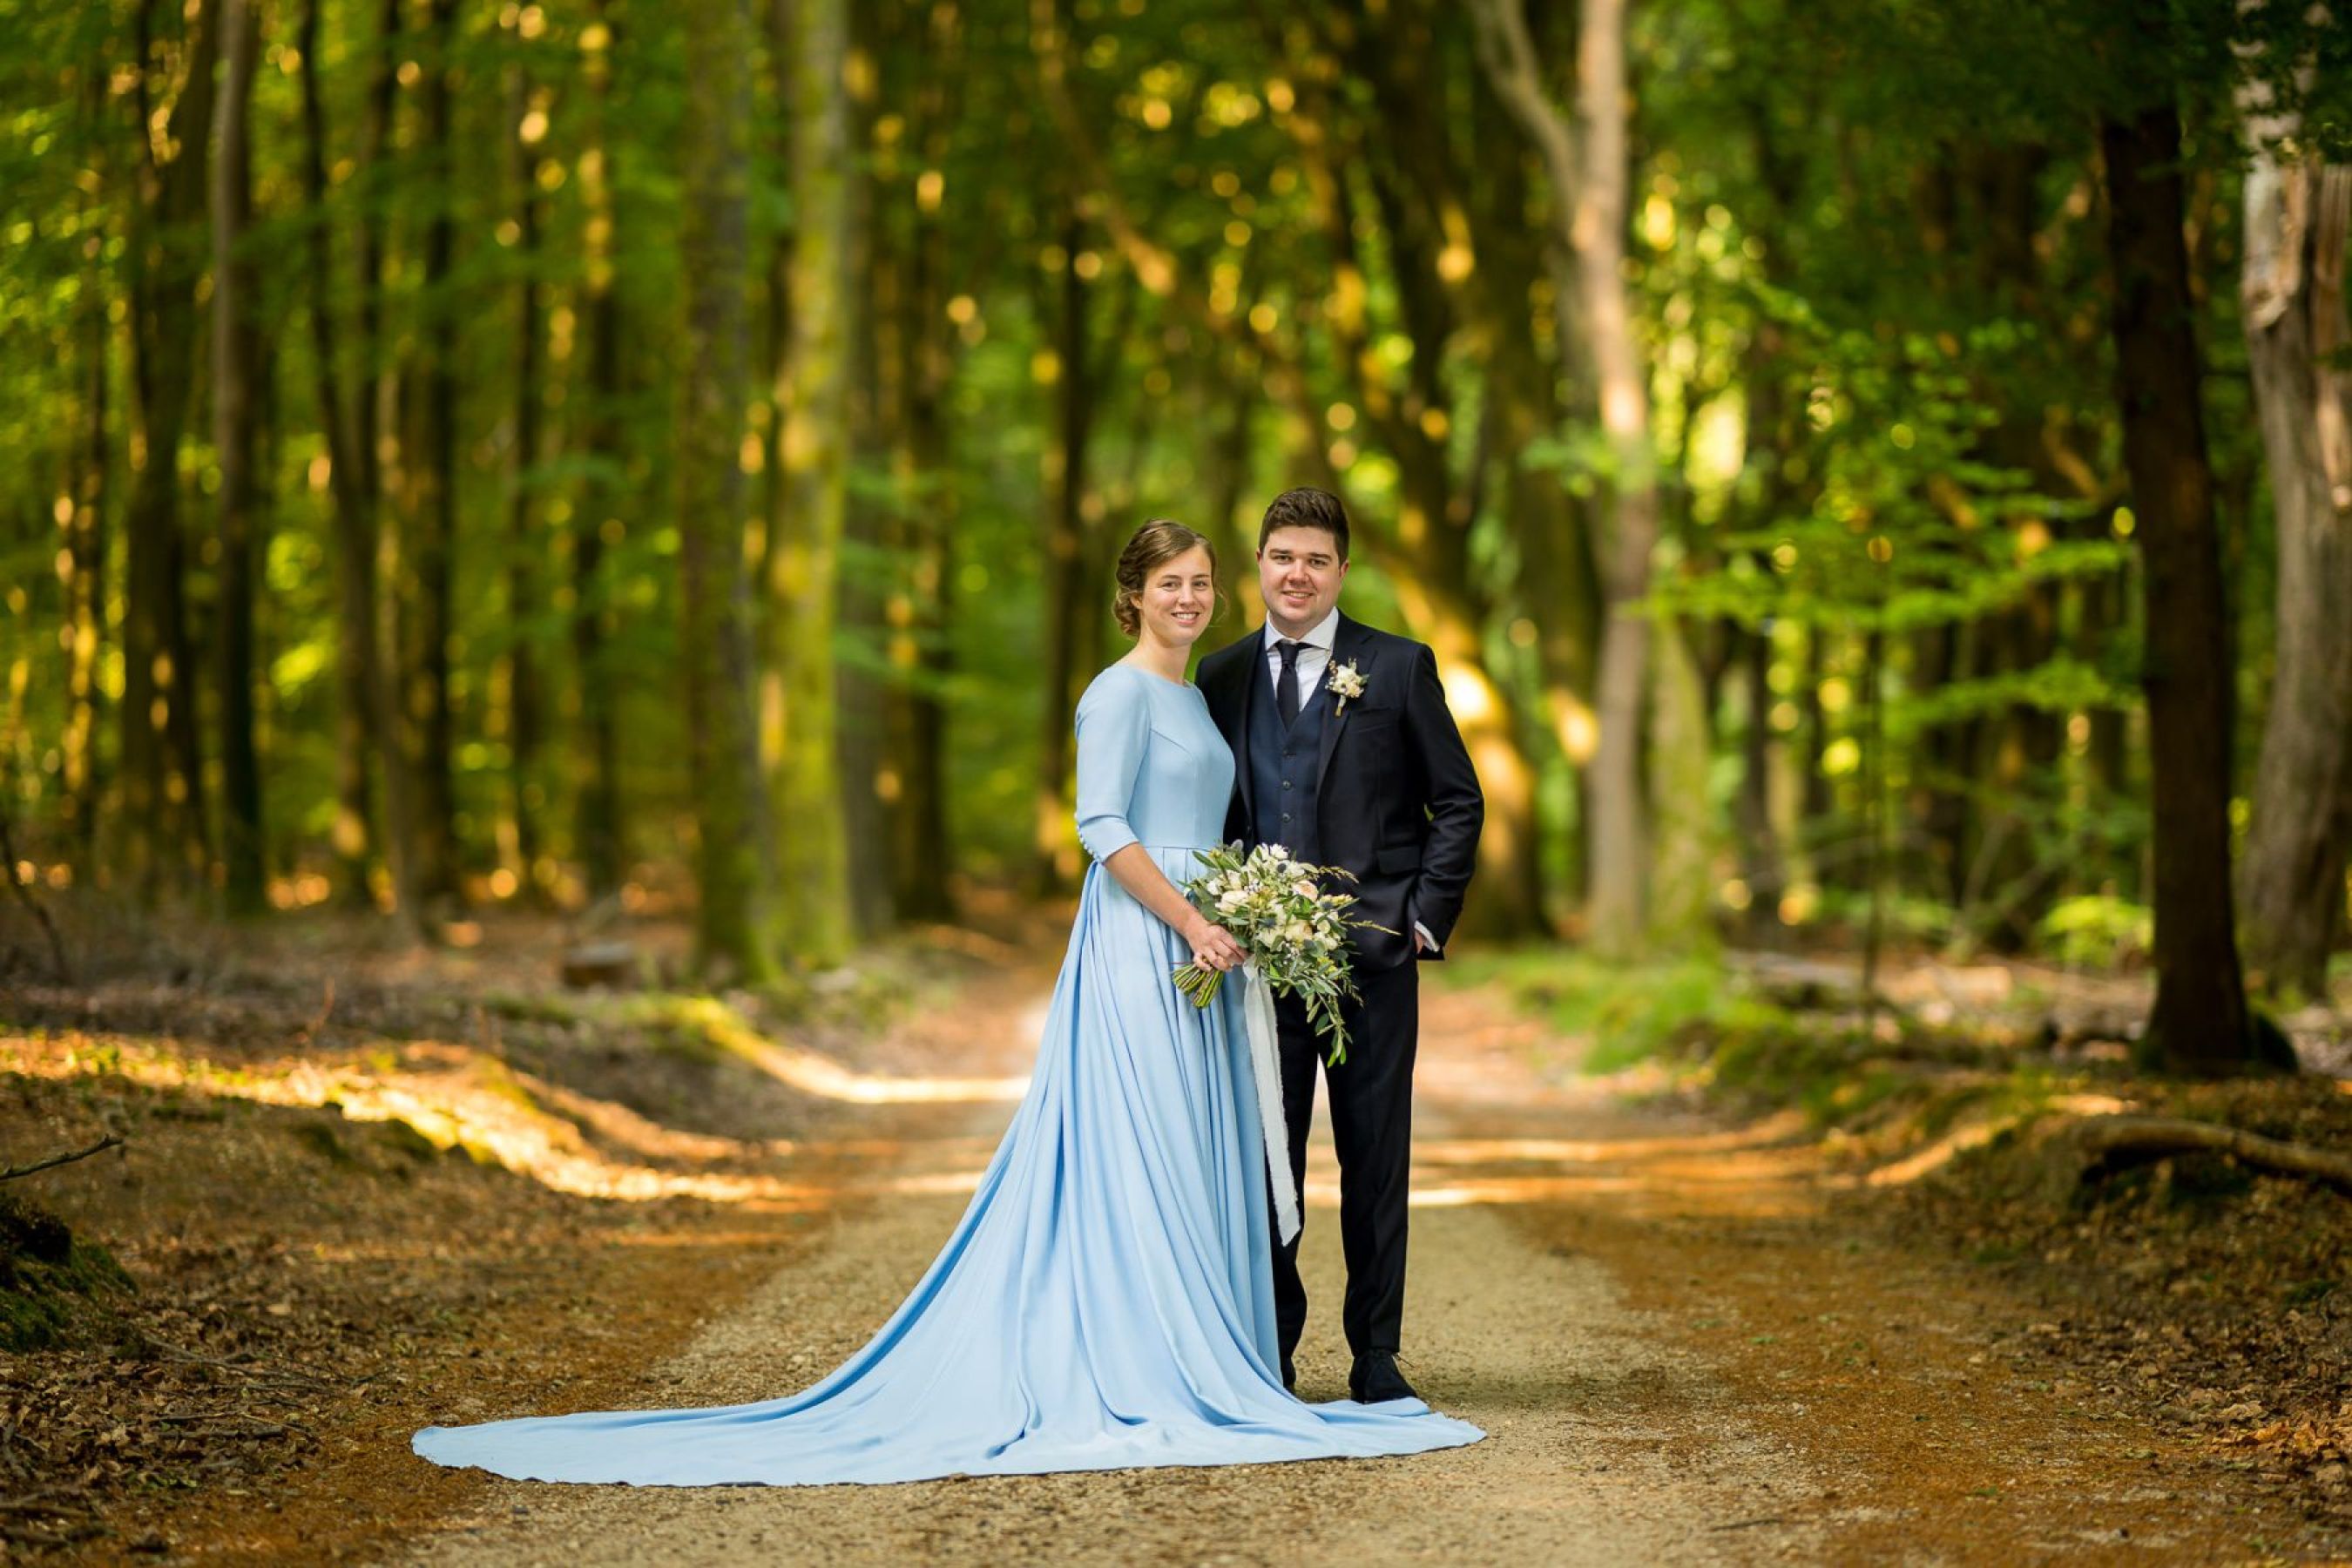 Berry-Jannet-Jan-van-de-Maat-Bruidsfotografie-Trouwfotografie-weddings-Elspeet-Speulderbos